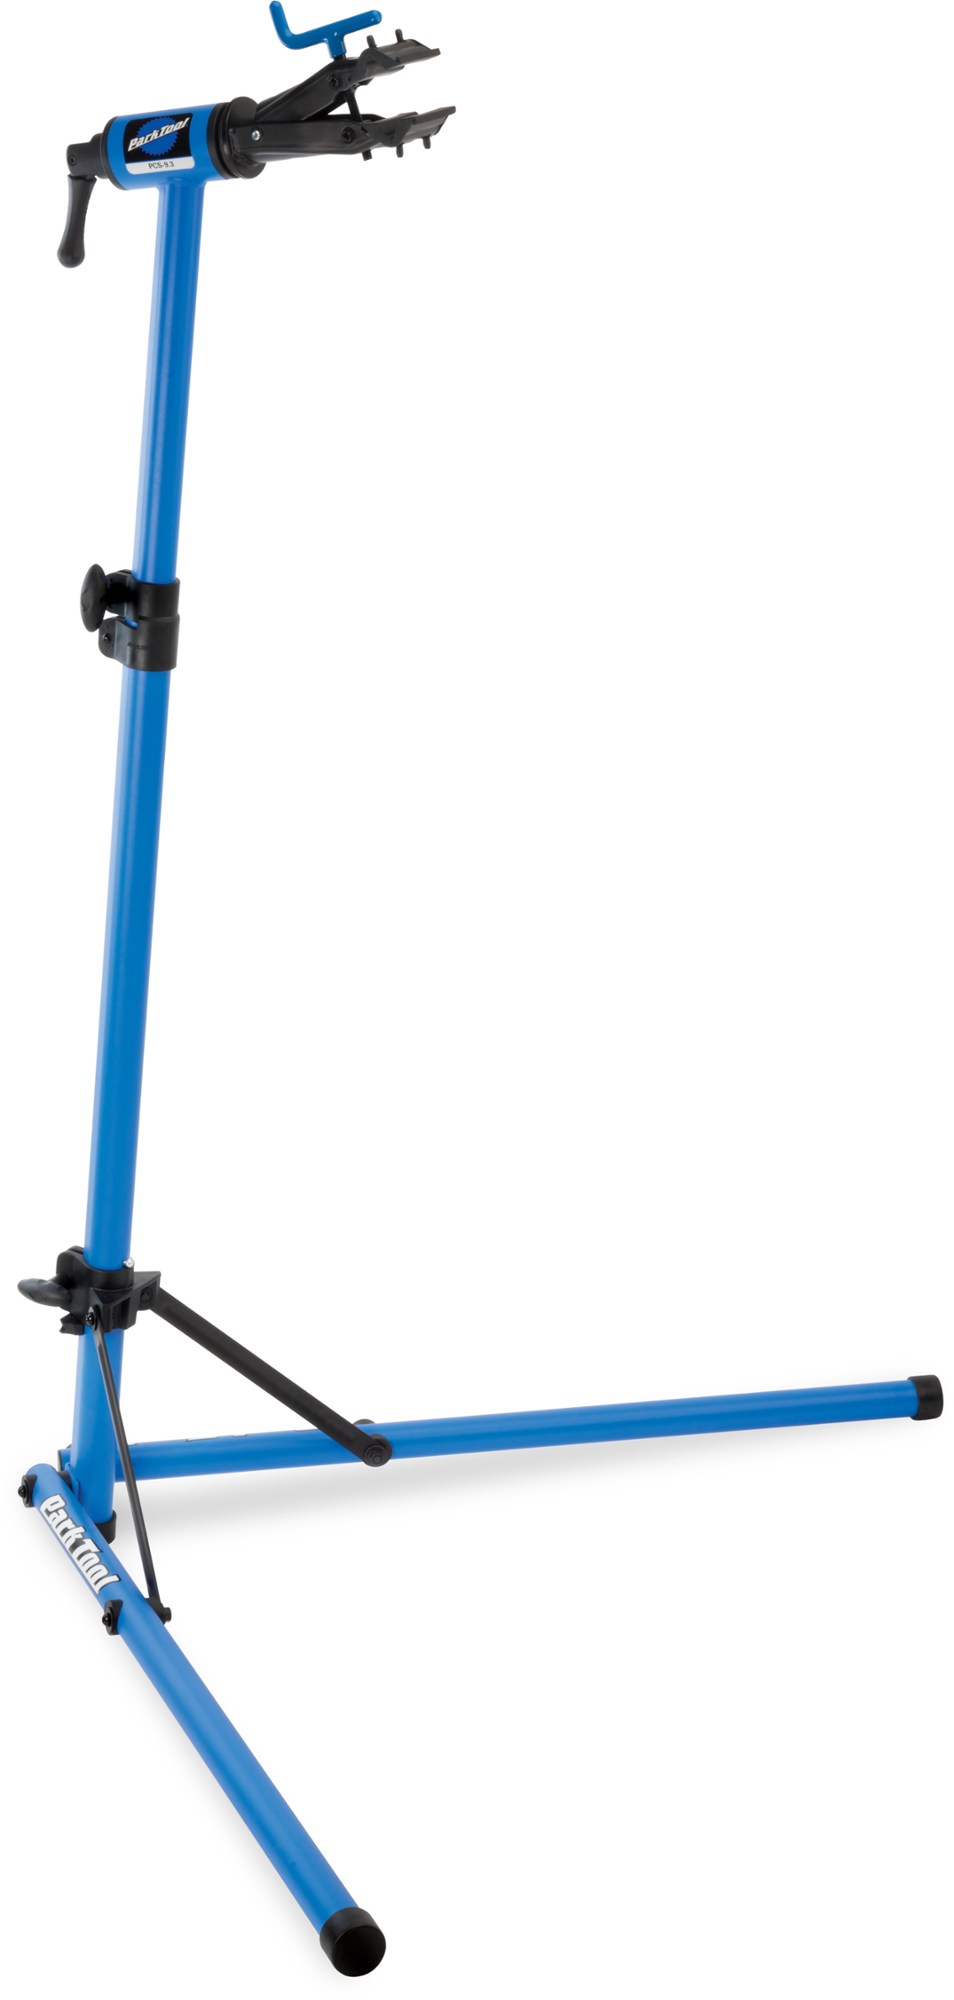 Стенд для ремонта велосипедов PCS 9.3 для домашнего механика Park Tool, синий